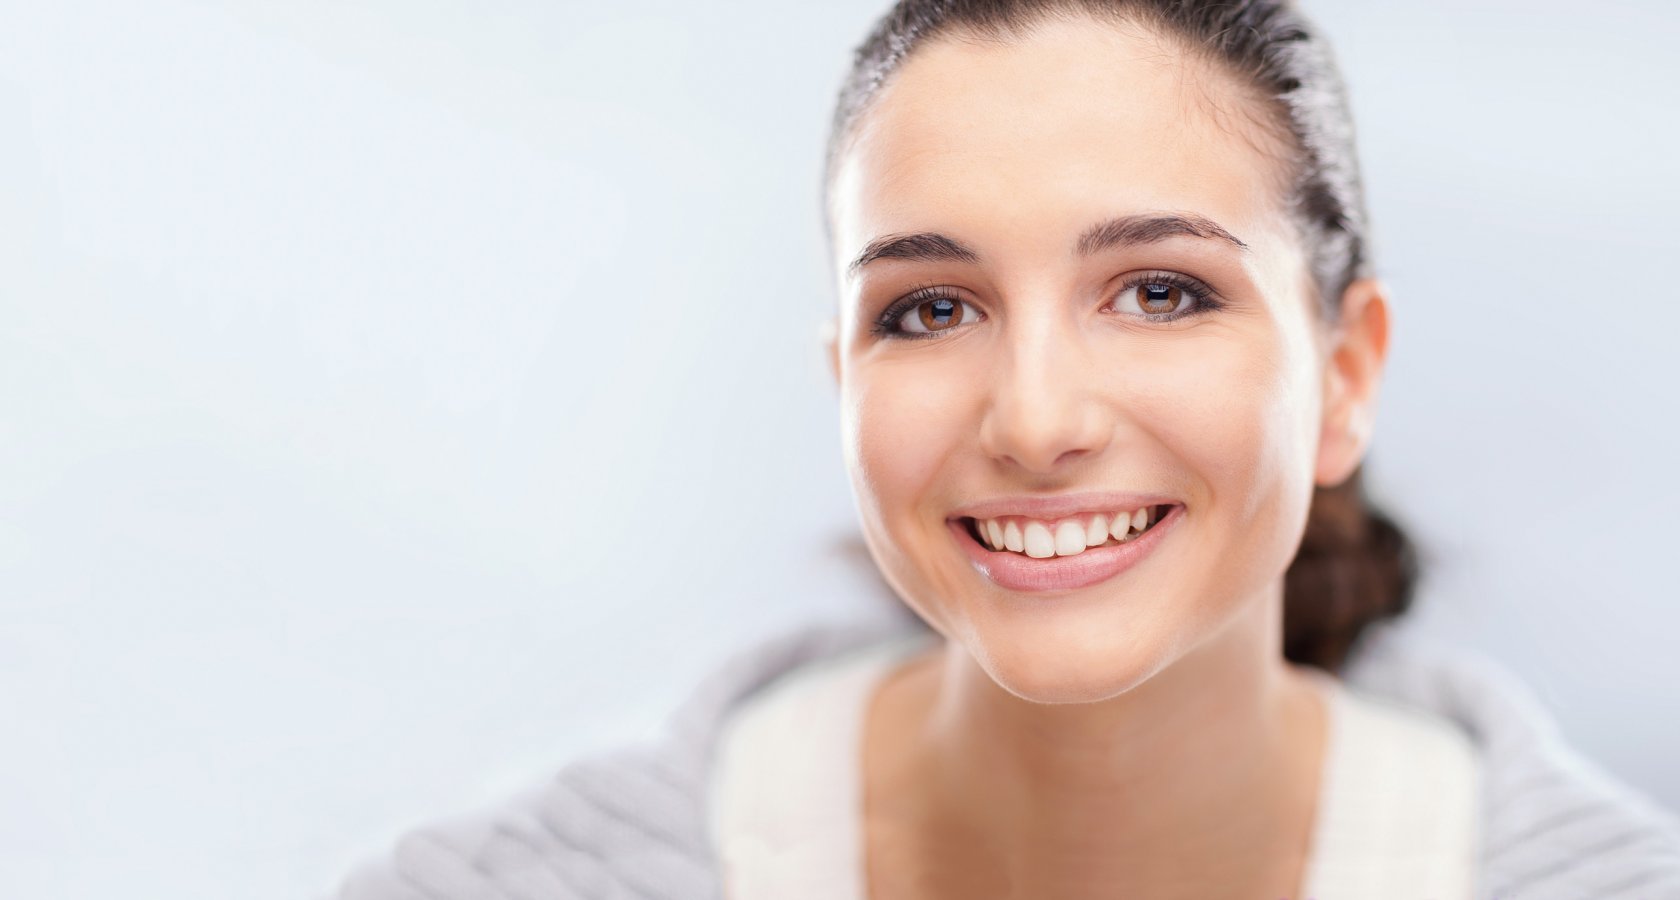 Лечение зубов в клинике: сохранение здоровья и красоты улыбки